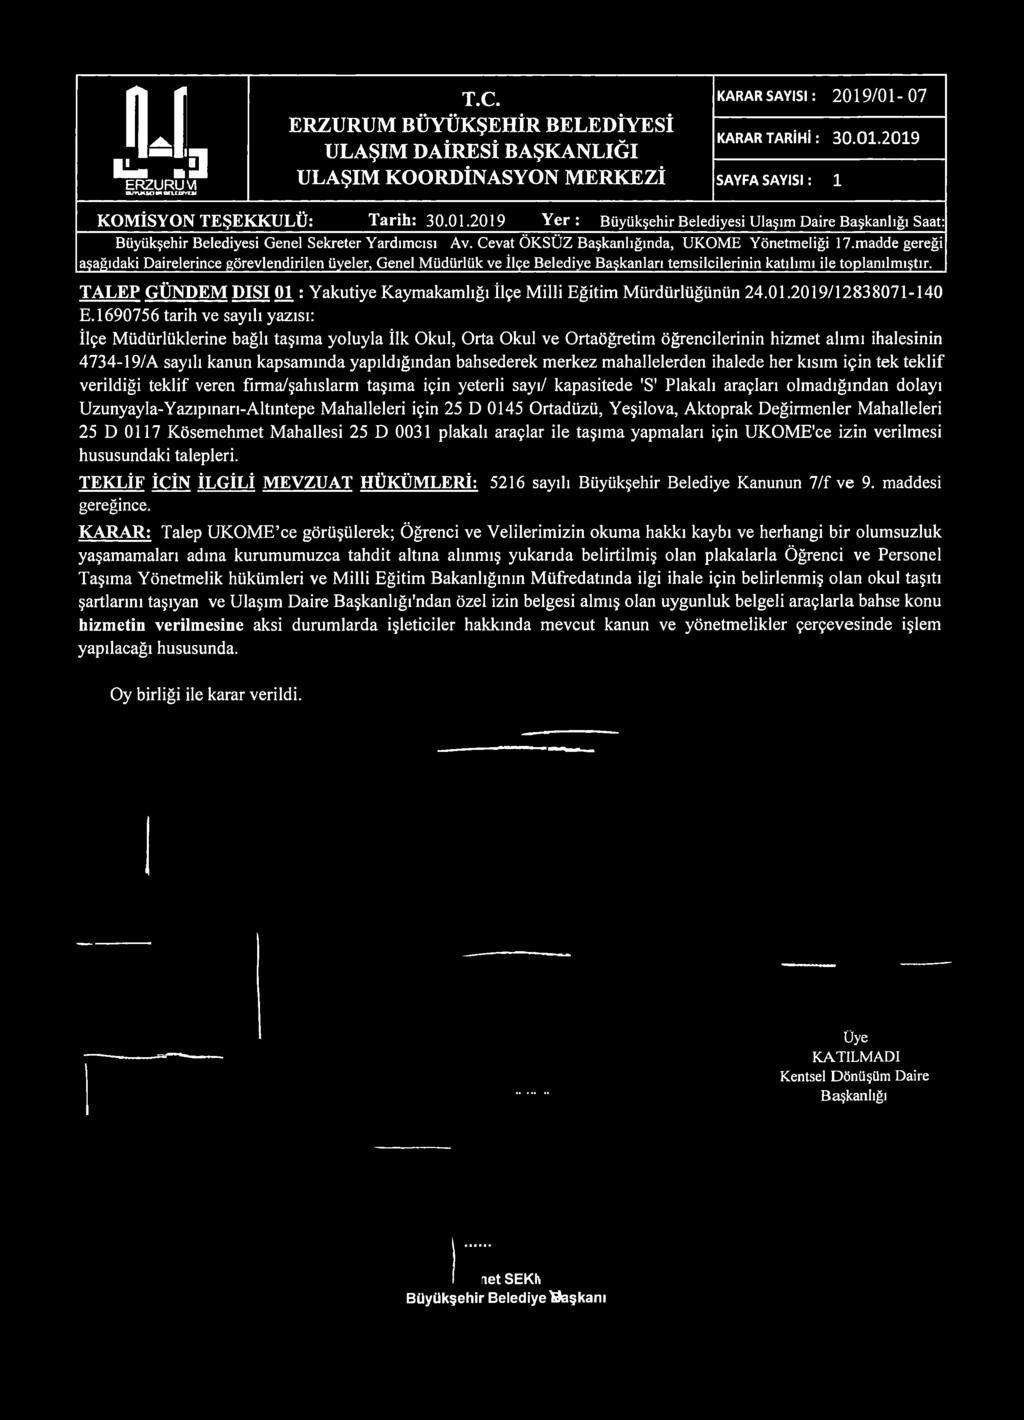 TALEP GÜNDEM DIŞI 01 : Yakutiye Kaymakamlığı İlçe Milli Eğitim Mürdürlüğünün 24.01.2019/12838071-140 E.